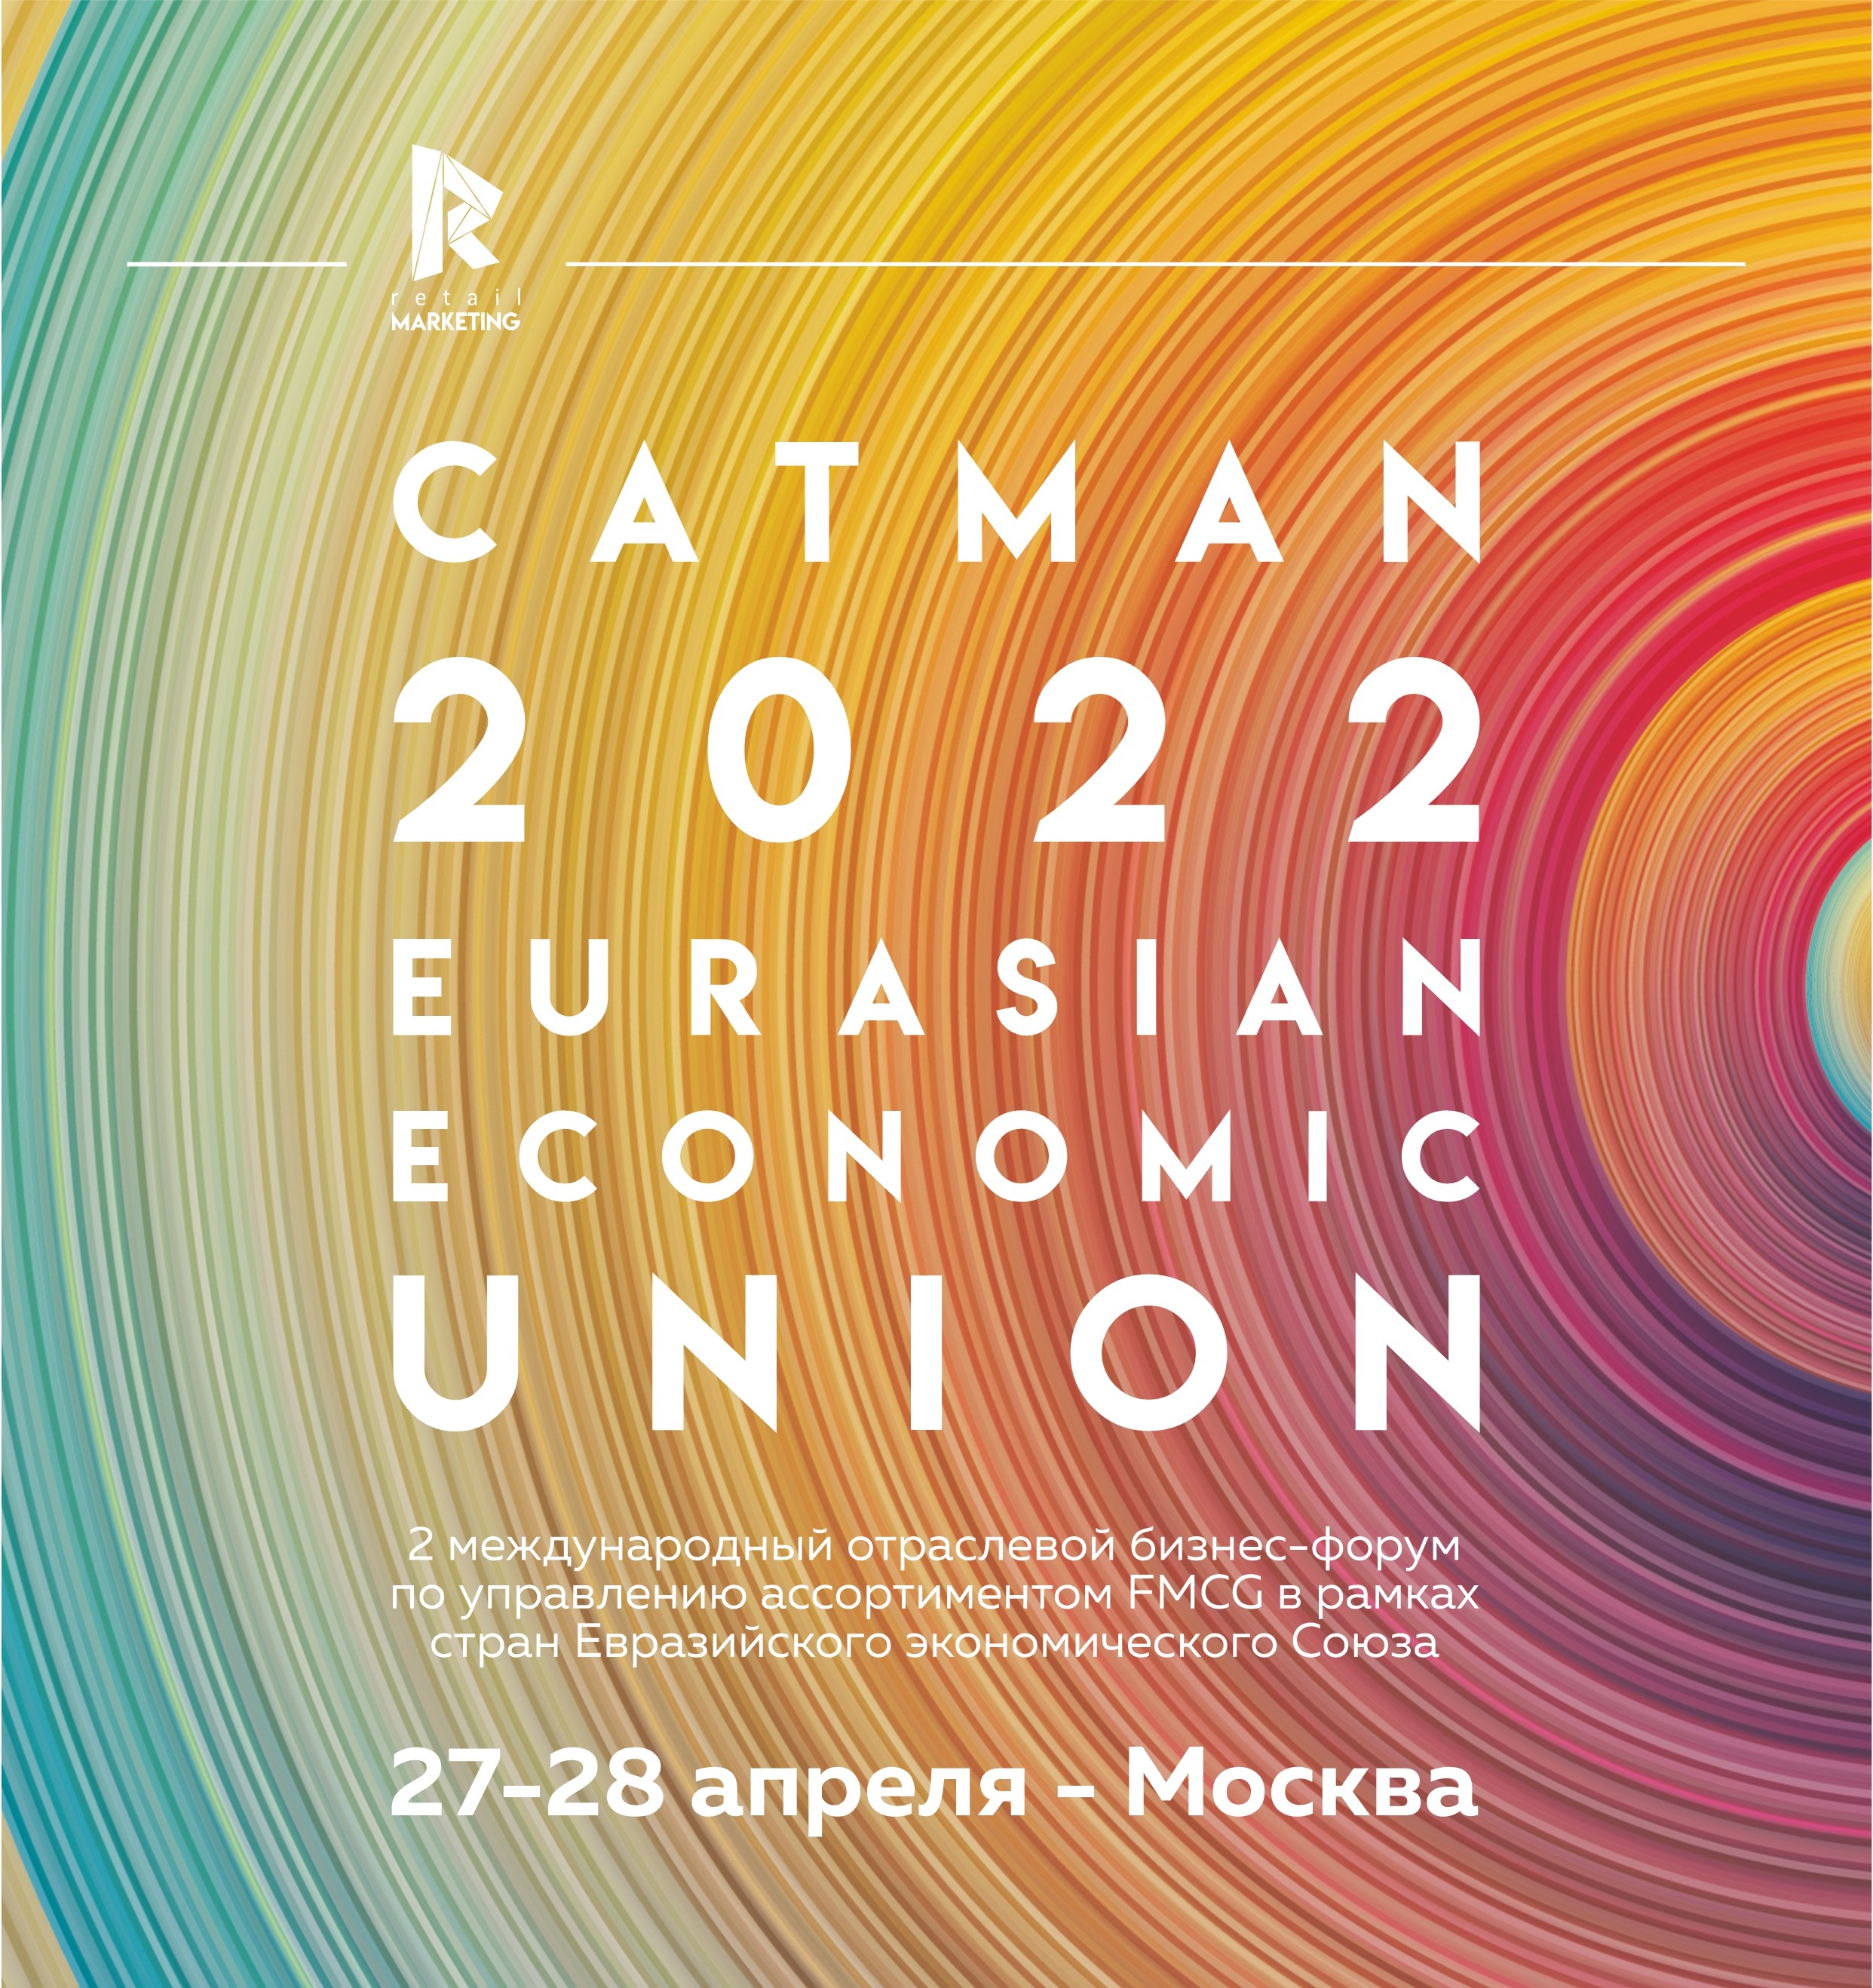 CATMAN 2022 - Международный бизнес-форум по управлению ассортиментом FMCG